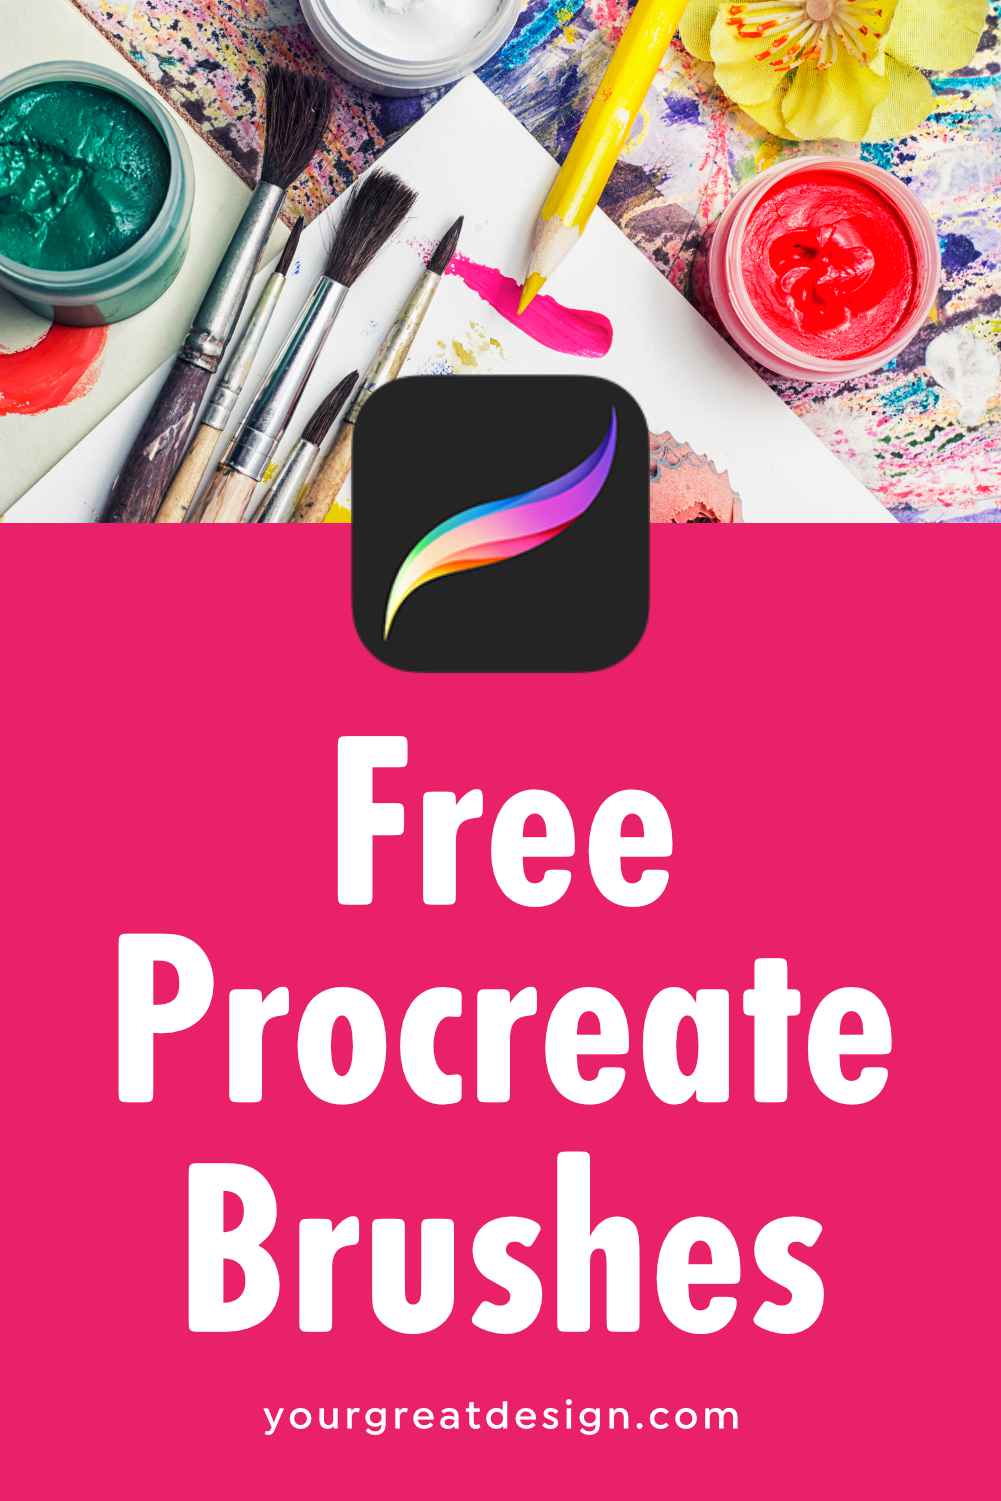 free procreate brushes 2020